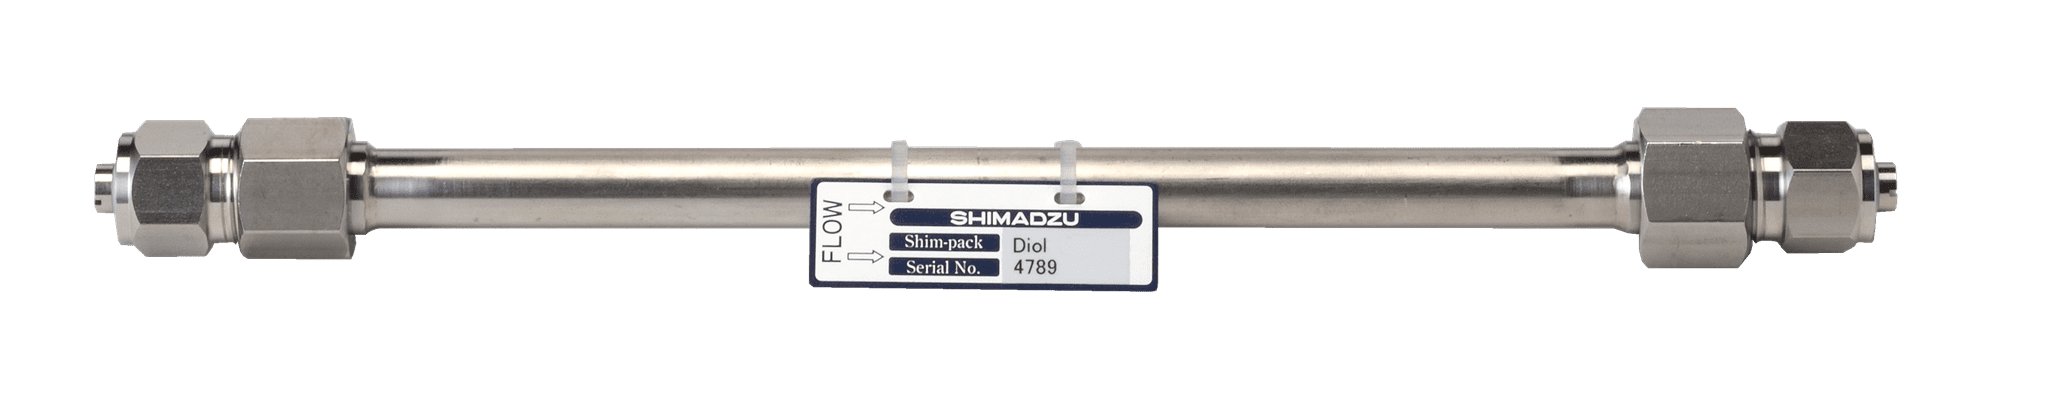 Immagine di Shim-pack Diol-150; 5 µm; 250 x 7.9